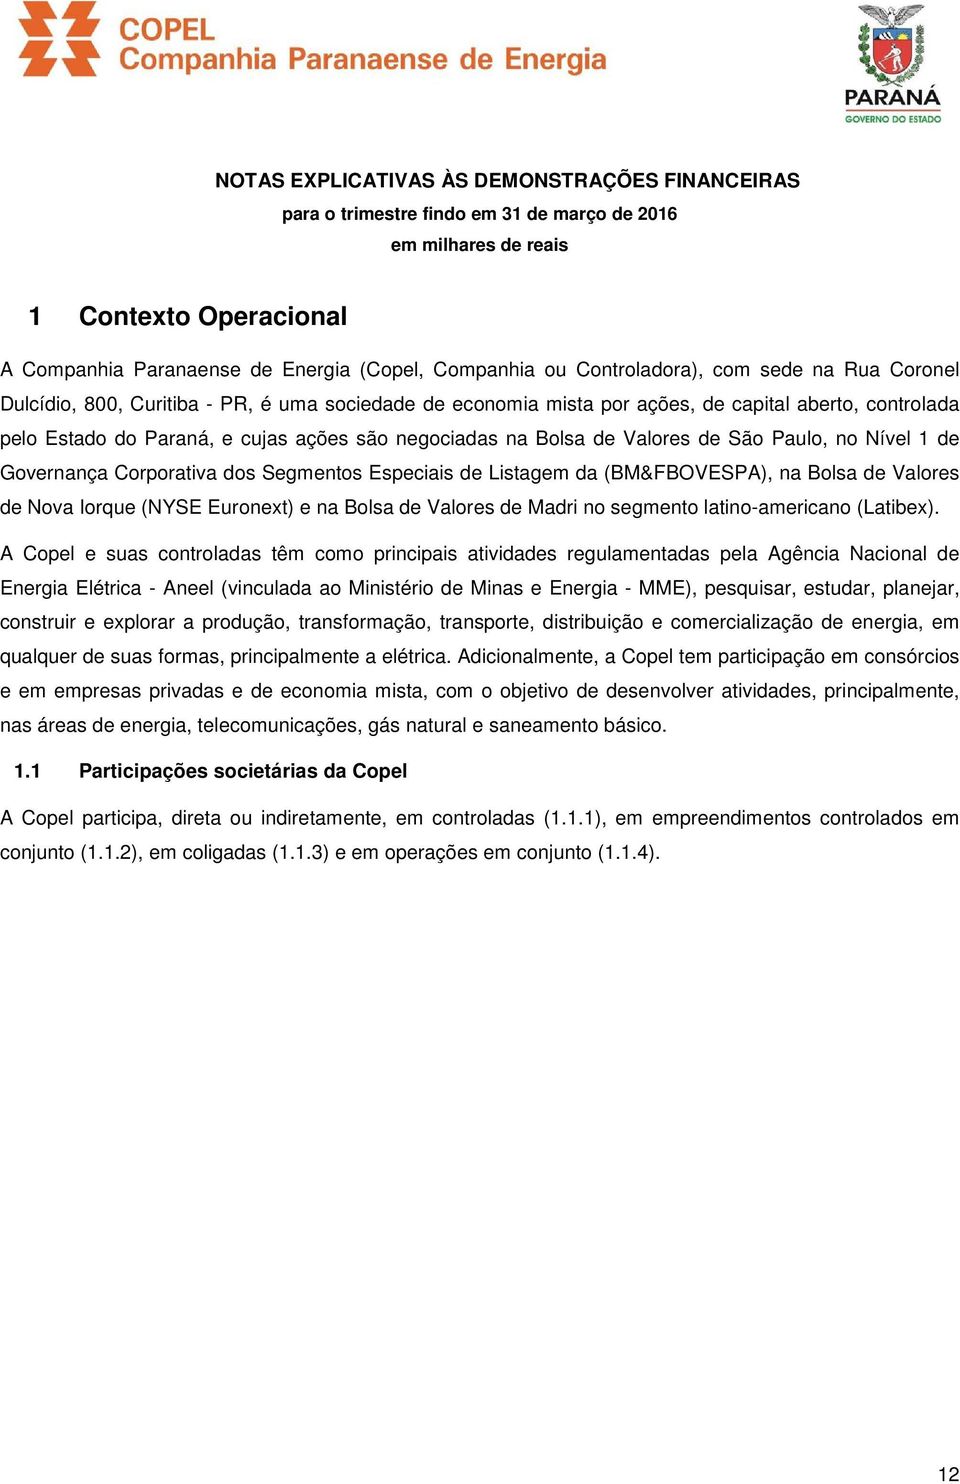 Bolsa de Valores de São Paulo, no Nível 1 de Governança Corporativa dos Segmentos Especiais de Listagem da (BM&FBOVESPA), na Bolsa de Valores de Nova Iorque (NYSE Euronext) e na Bolsa de Valores de